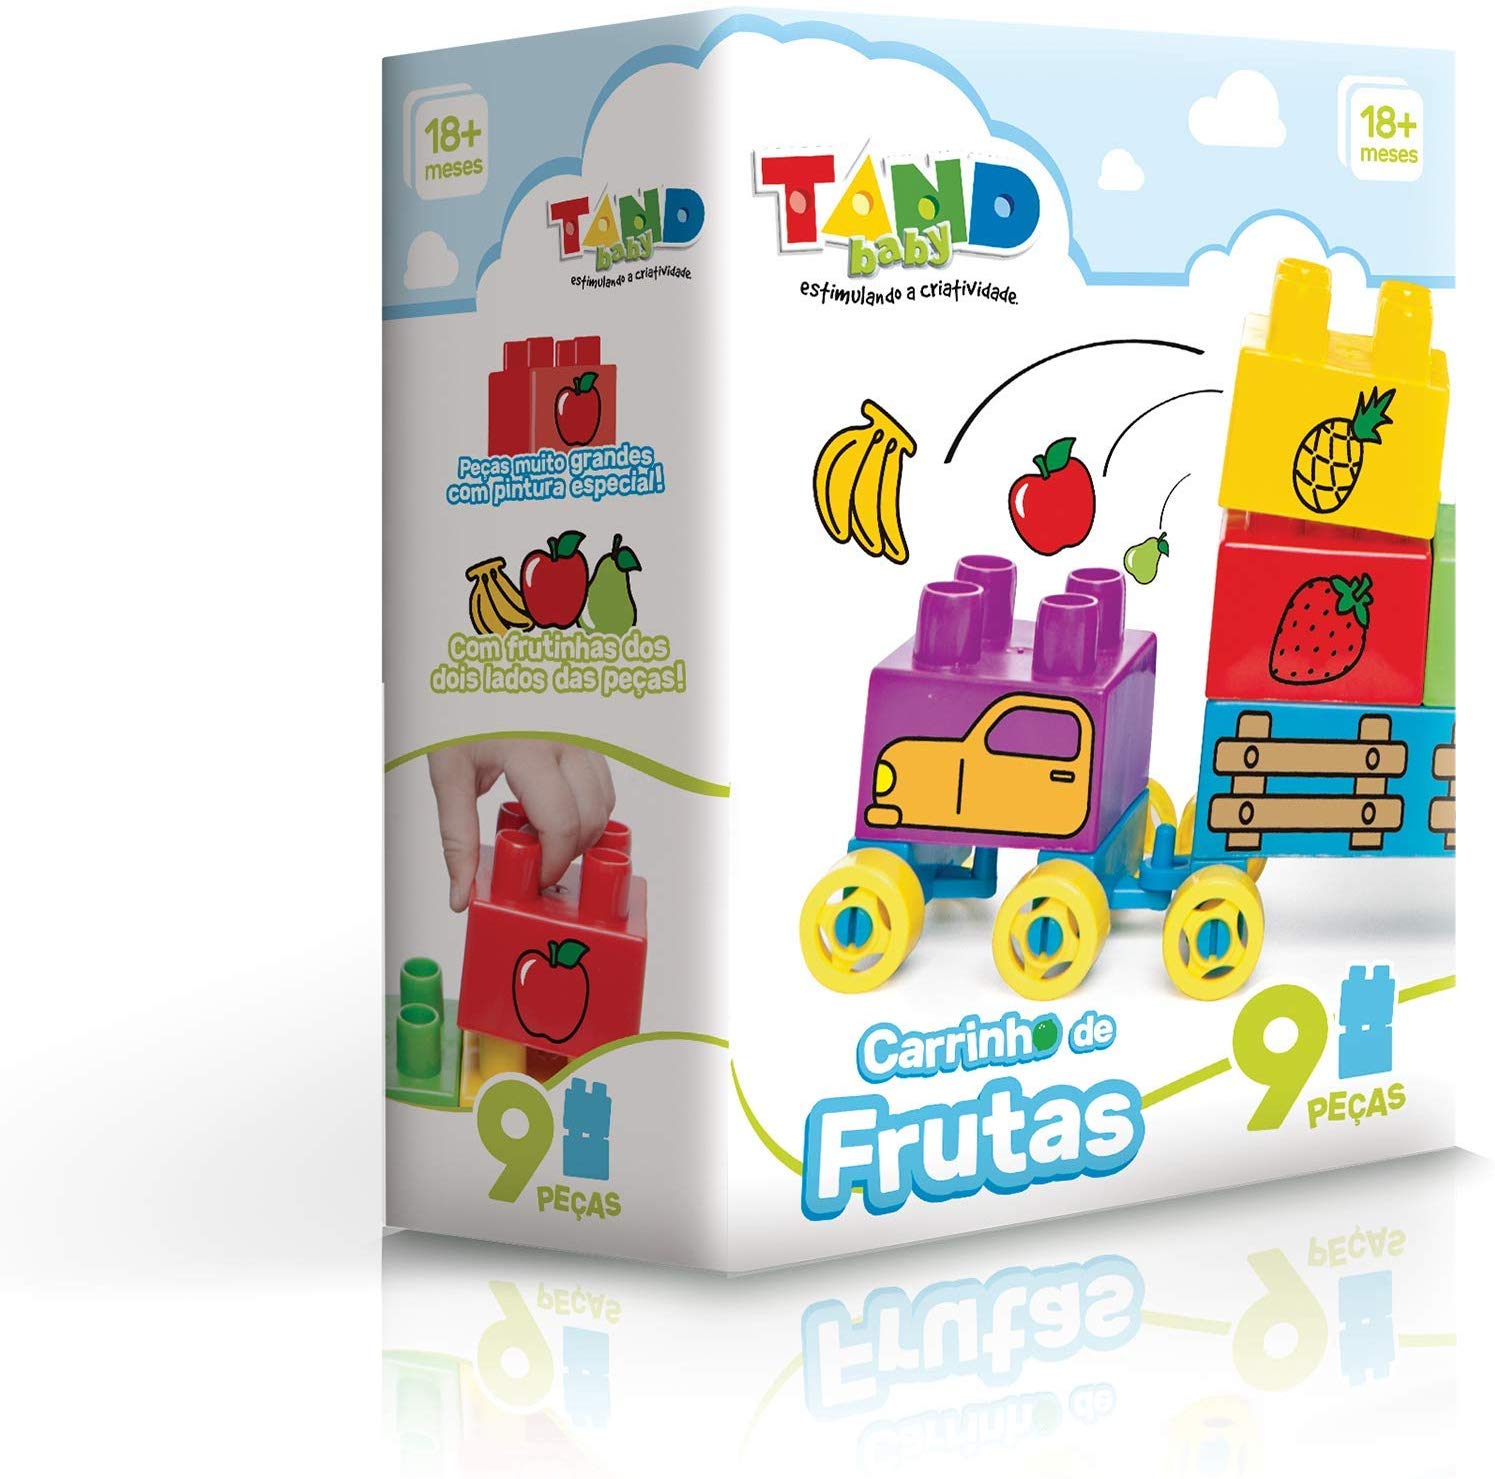  Tand Baby Carrinho de Frutas Toyster Brinquedos 